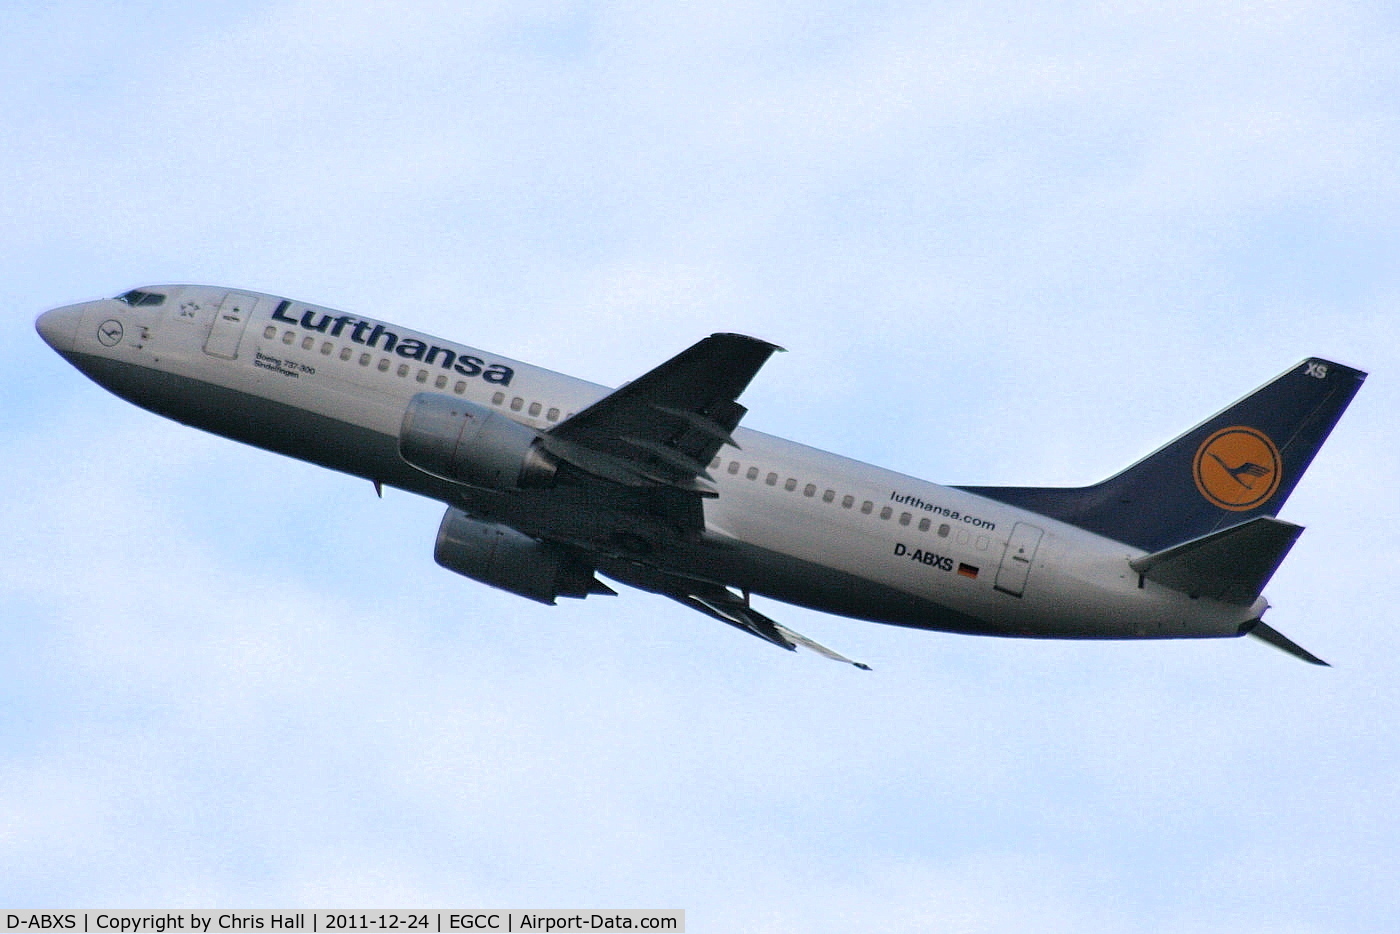 D-ABXS, 1988 Boeing 737-330 C/N 24280, Lufthansa